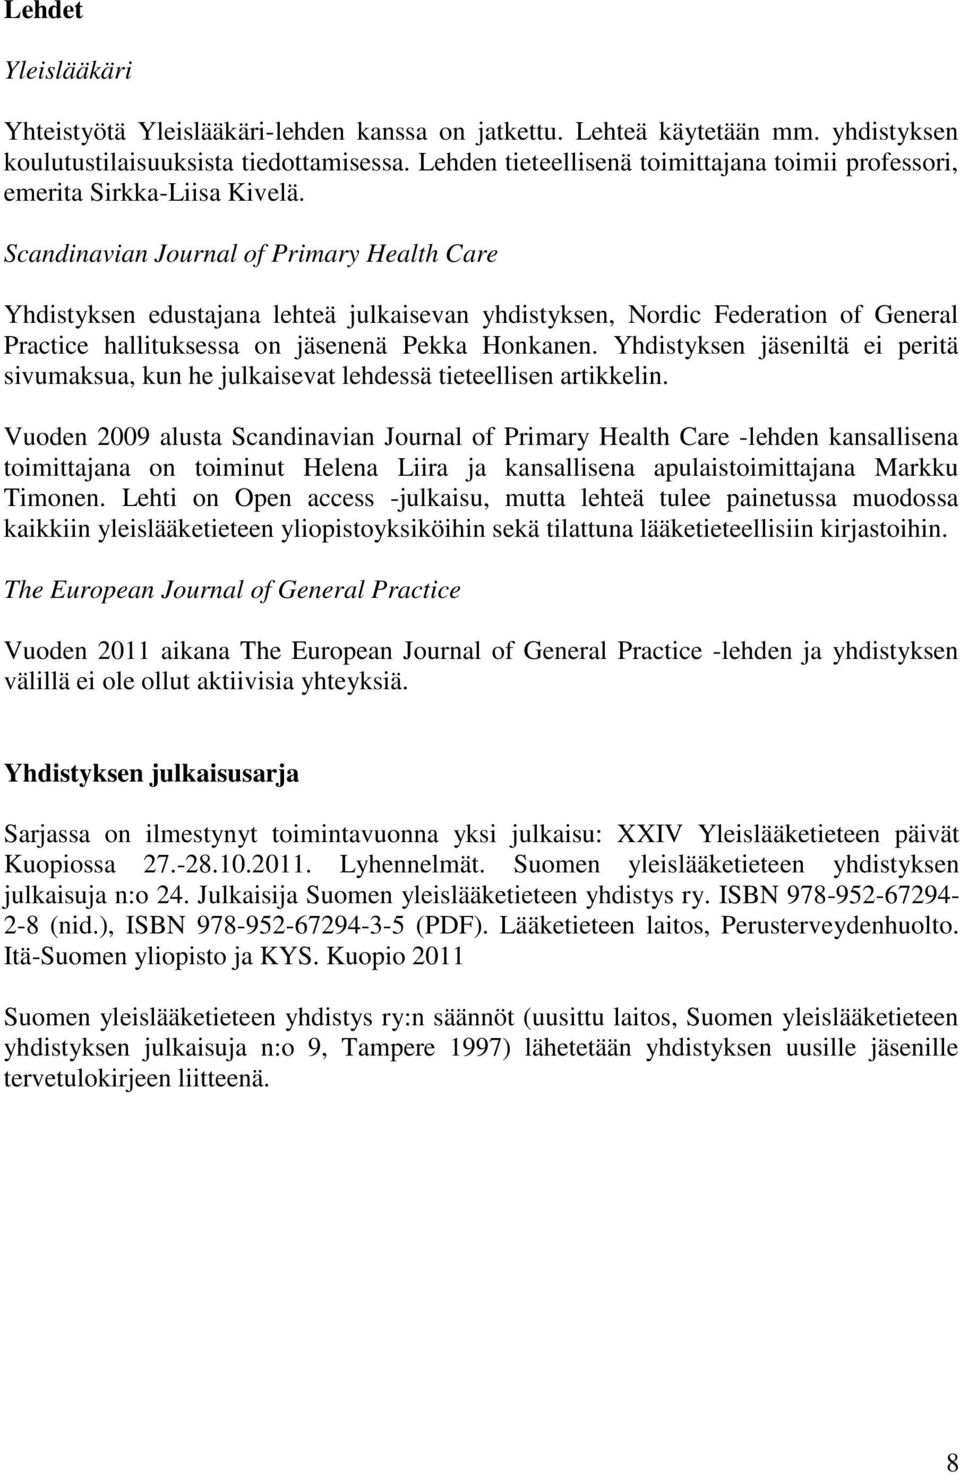 Scandinavian Journal of Primary Health Care Yhdistyksen edustajana lehteä julkaisevan yhdistyksen, Nordic Federation of General Practice hallituksessa on jäsenenä Pekka Honkanen.